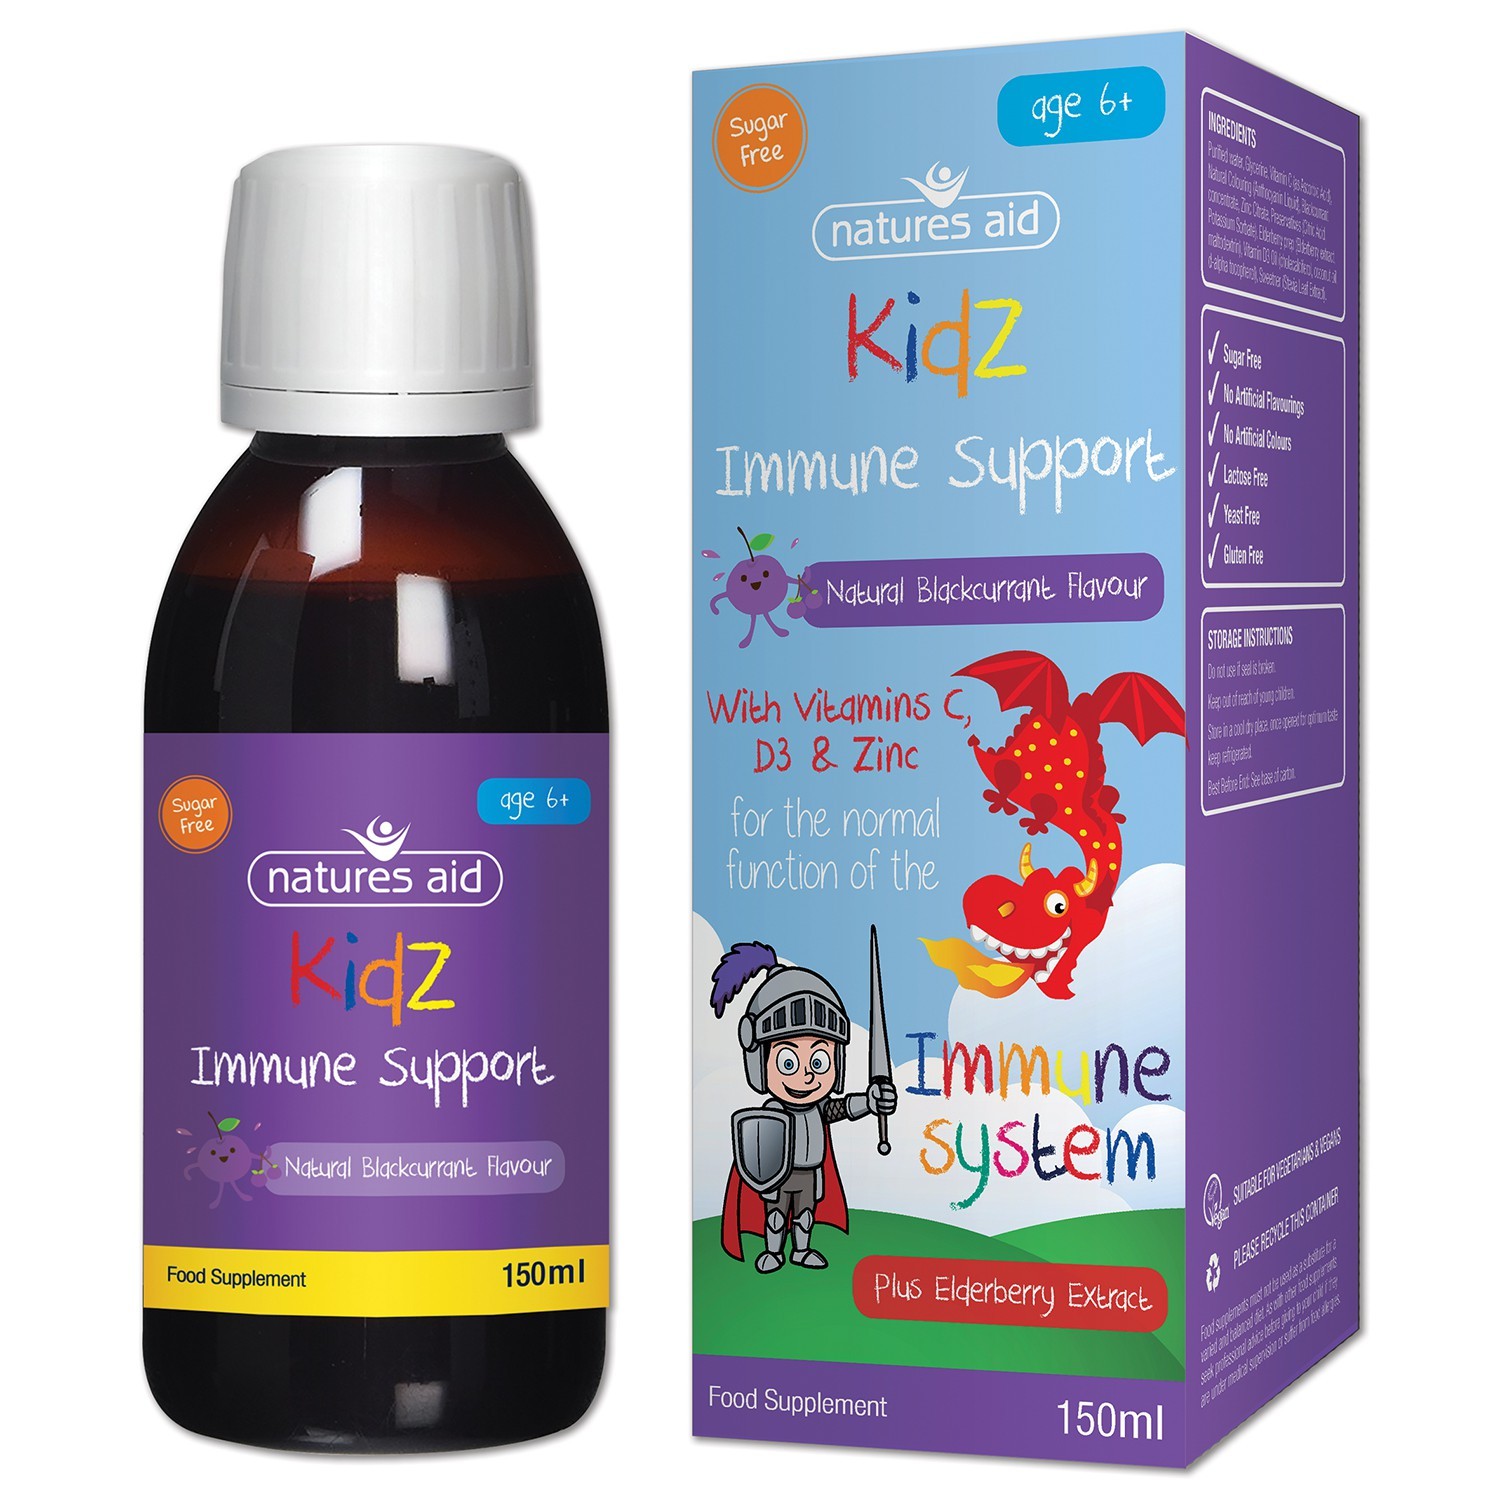 Natures Aid (6-12 Years) Kidz Immune Support